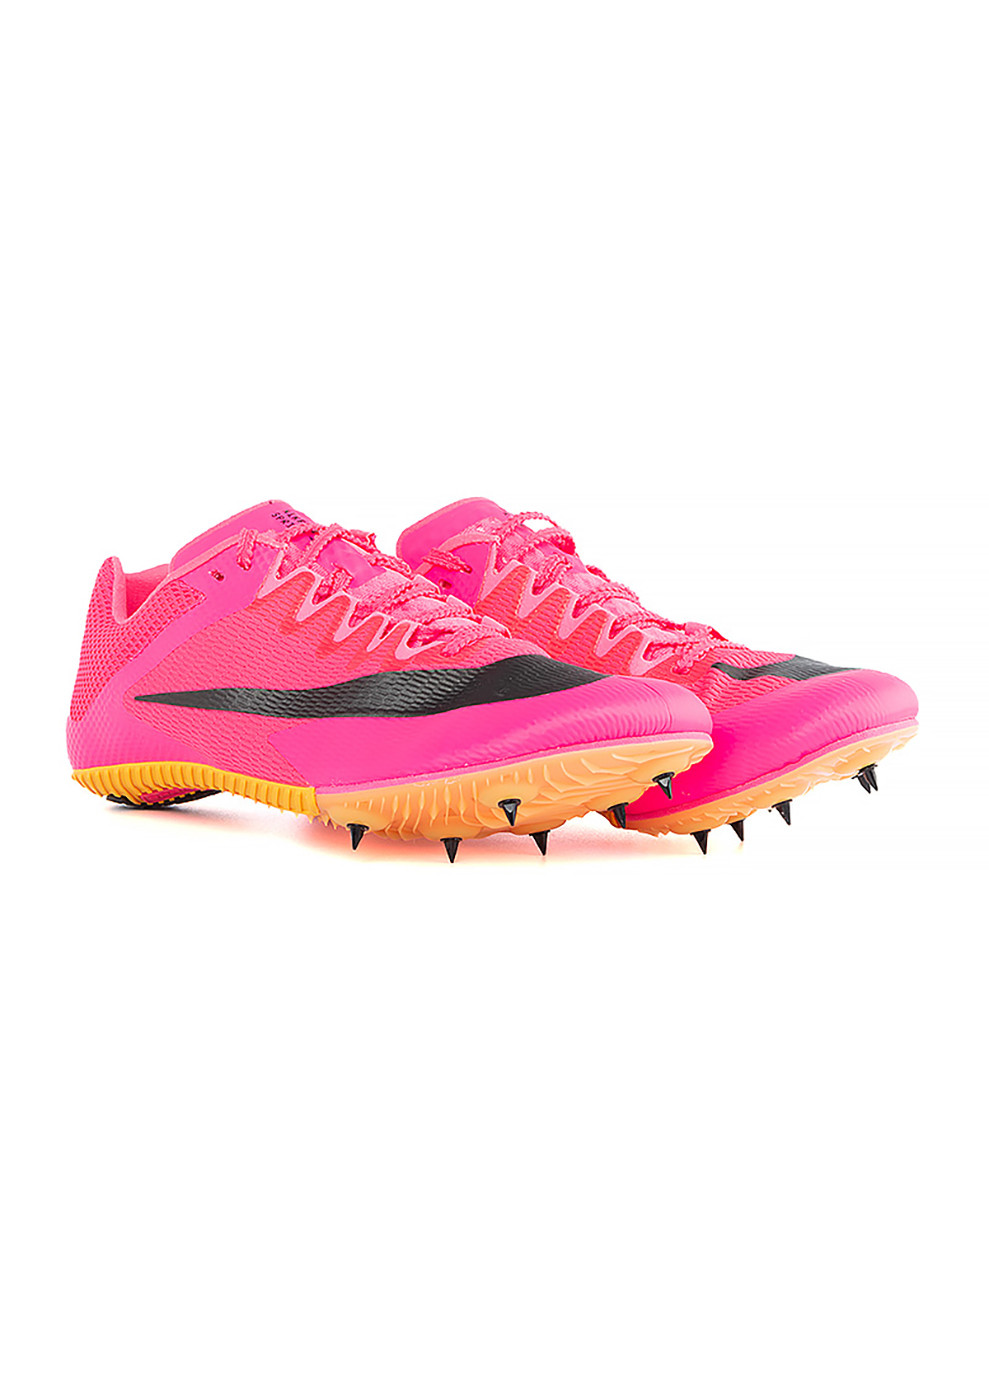 Розовые демисезонные кроссовки zoom rival sprint розовый Nike